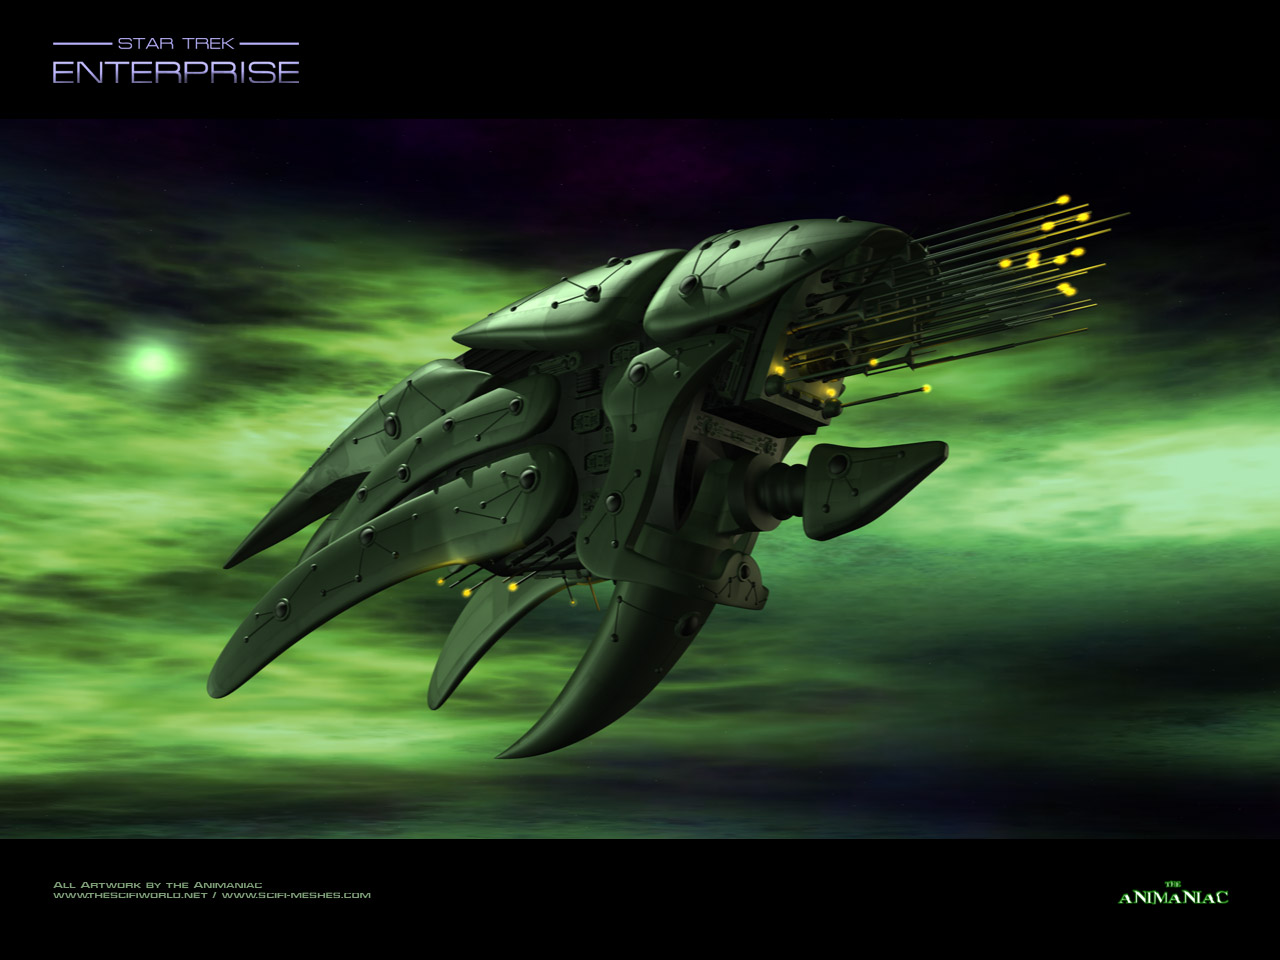 Romulan Warbird Original main body of the warbird